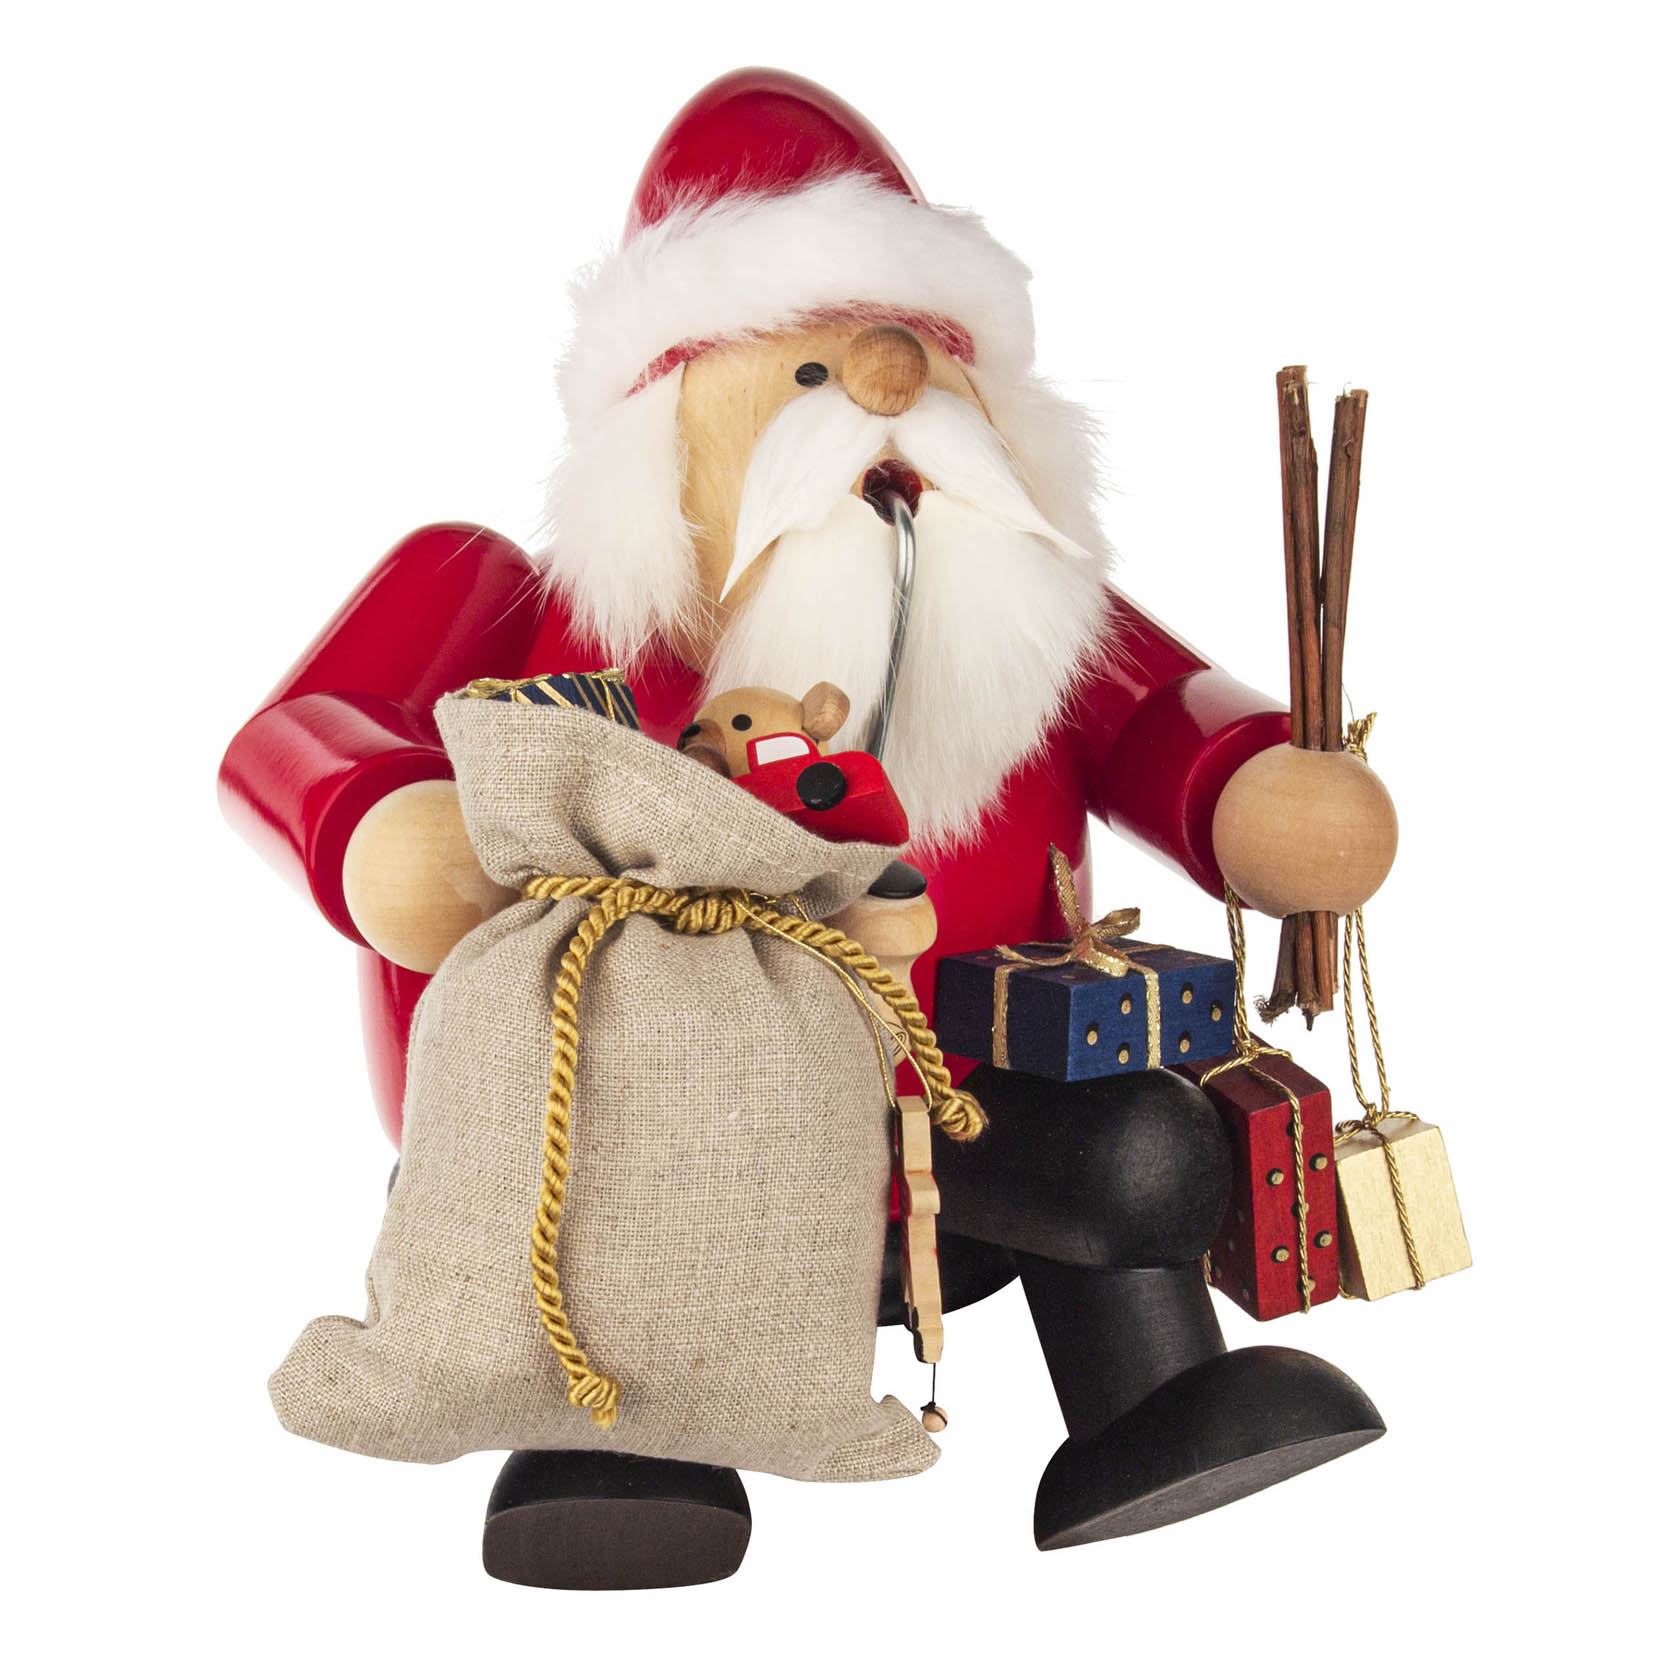 Räuchermann Weihnachtsmann Kanntenhocker, groß 26cm im Dregeno Online Shop günstig kaufen